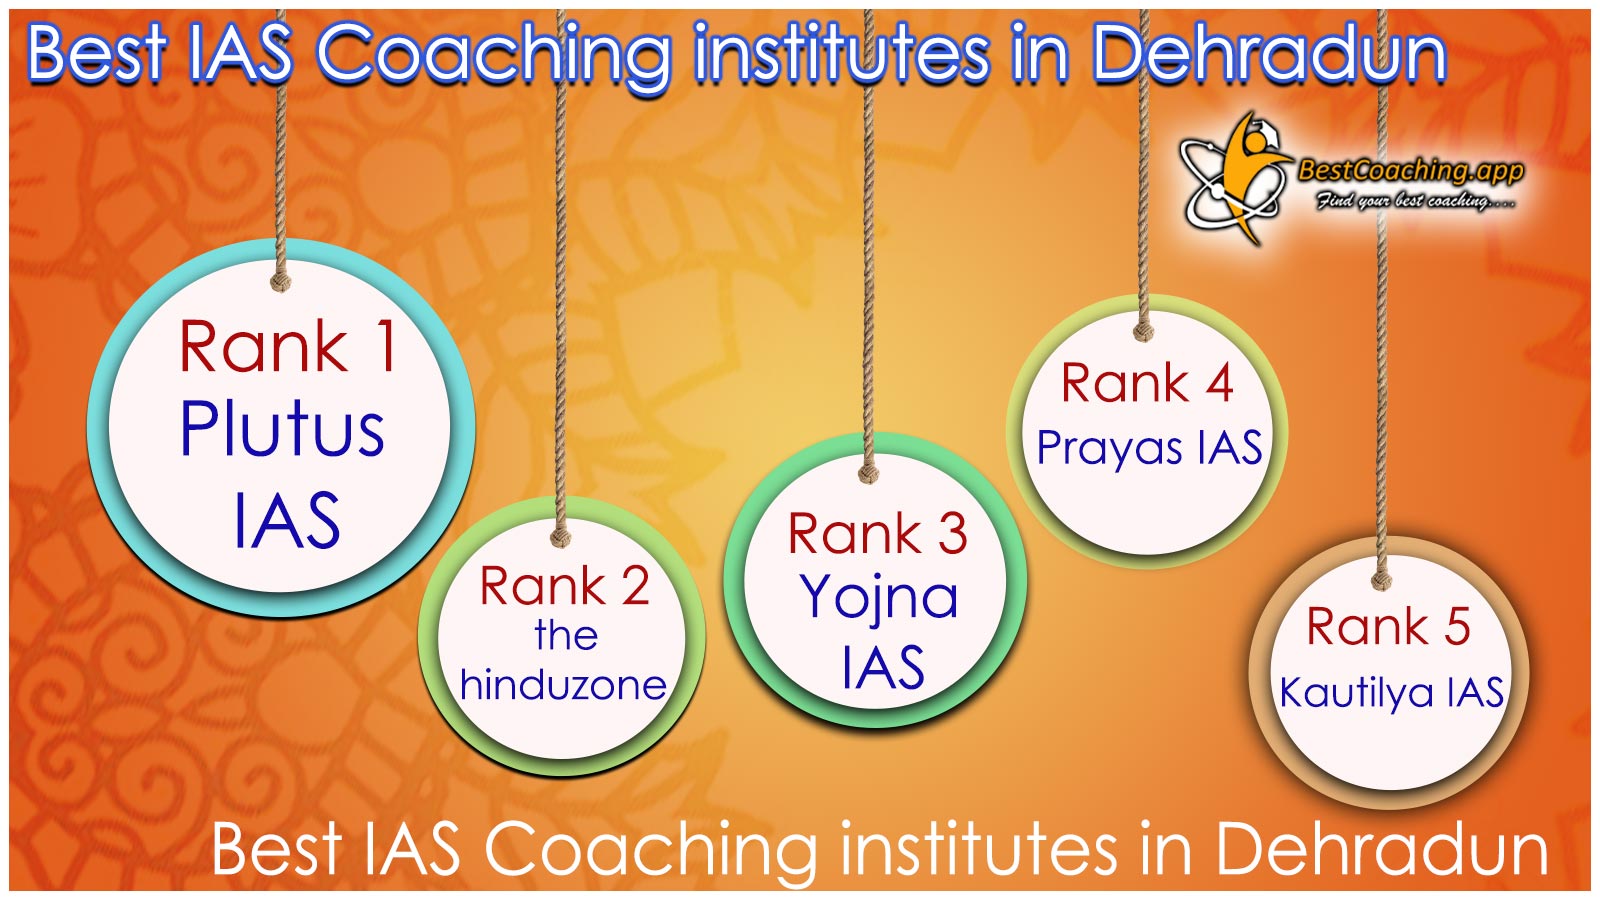 Best IAS Coaching institutes in Dehradun 